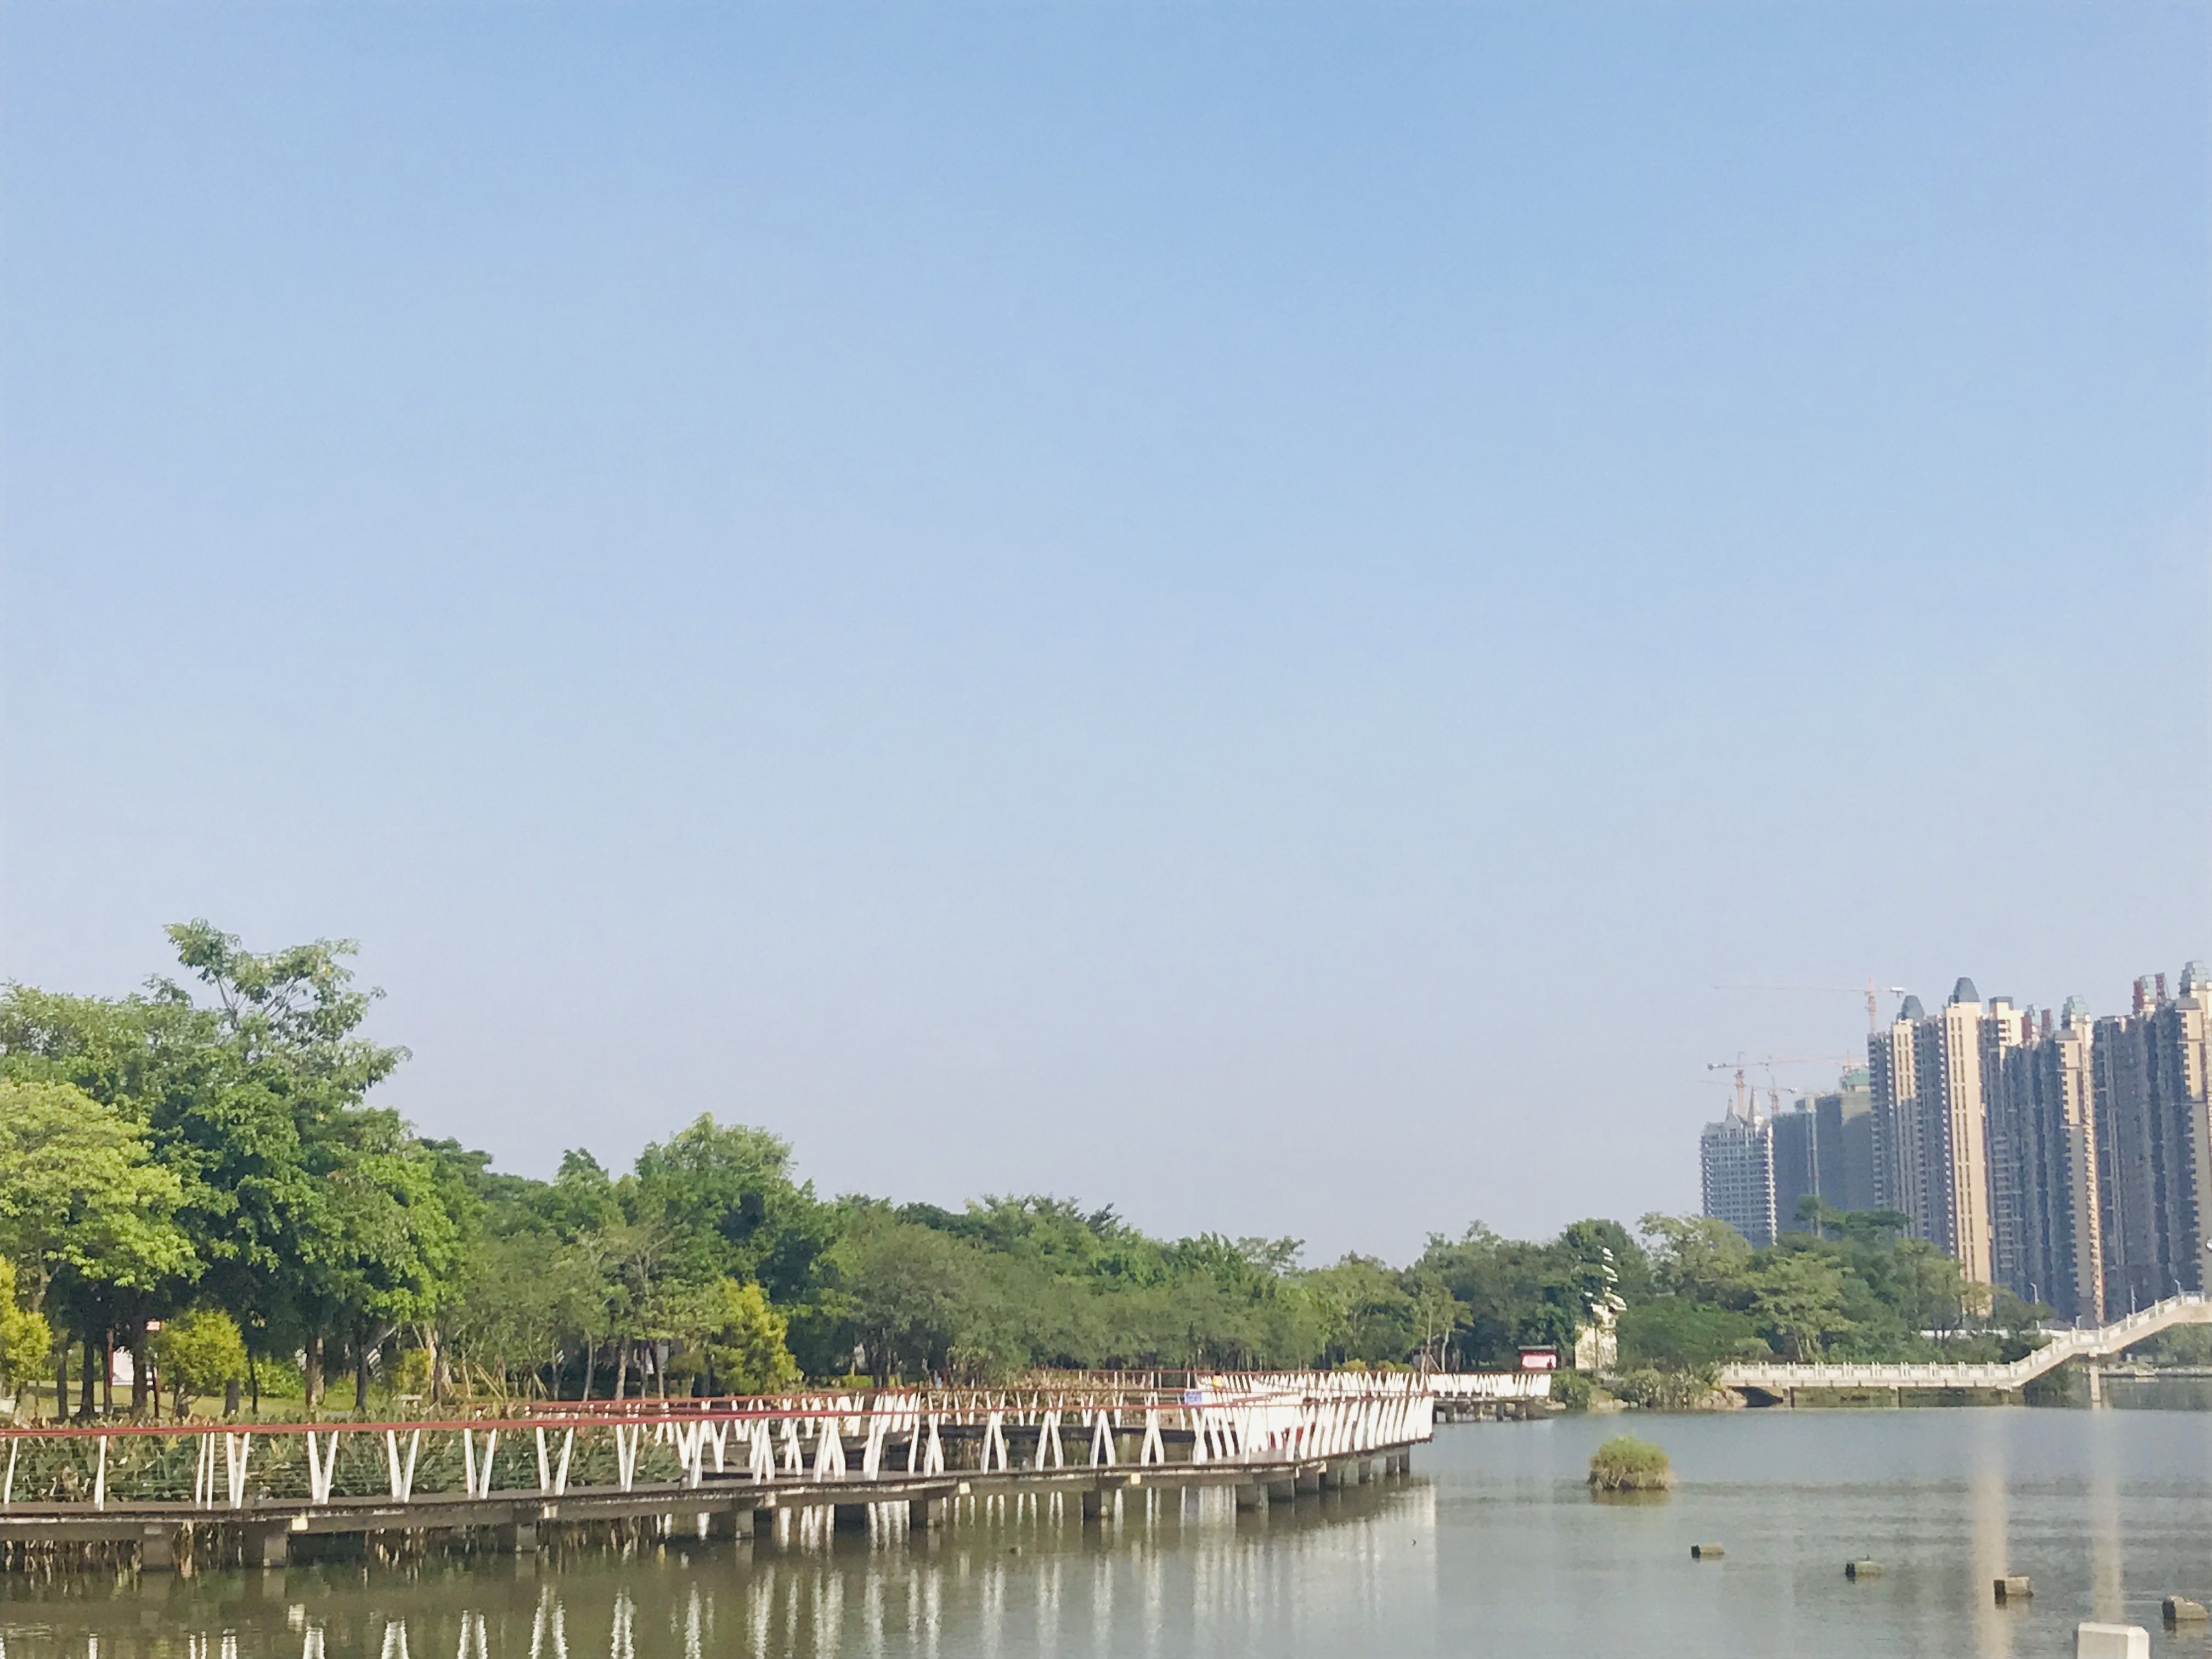 1/5惠州市惠城区金山湖公园,一个滨水景观为主的开放式公园,规划总